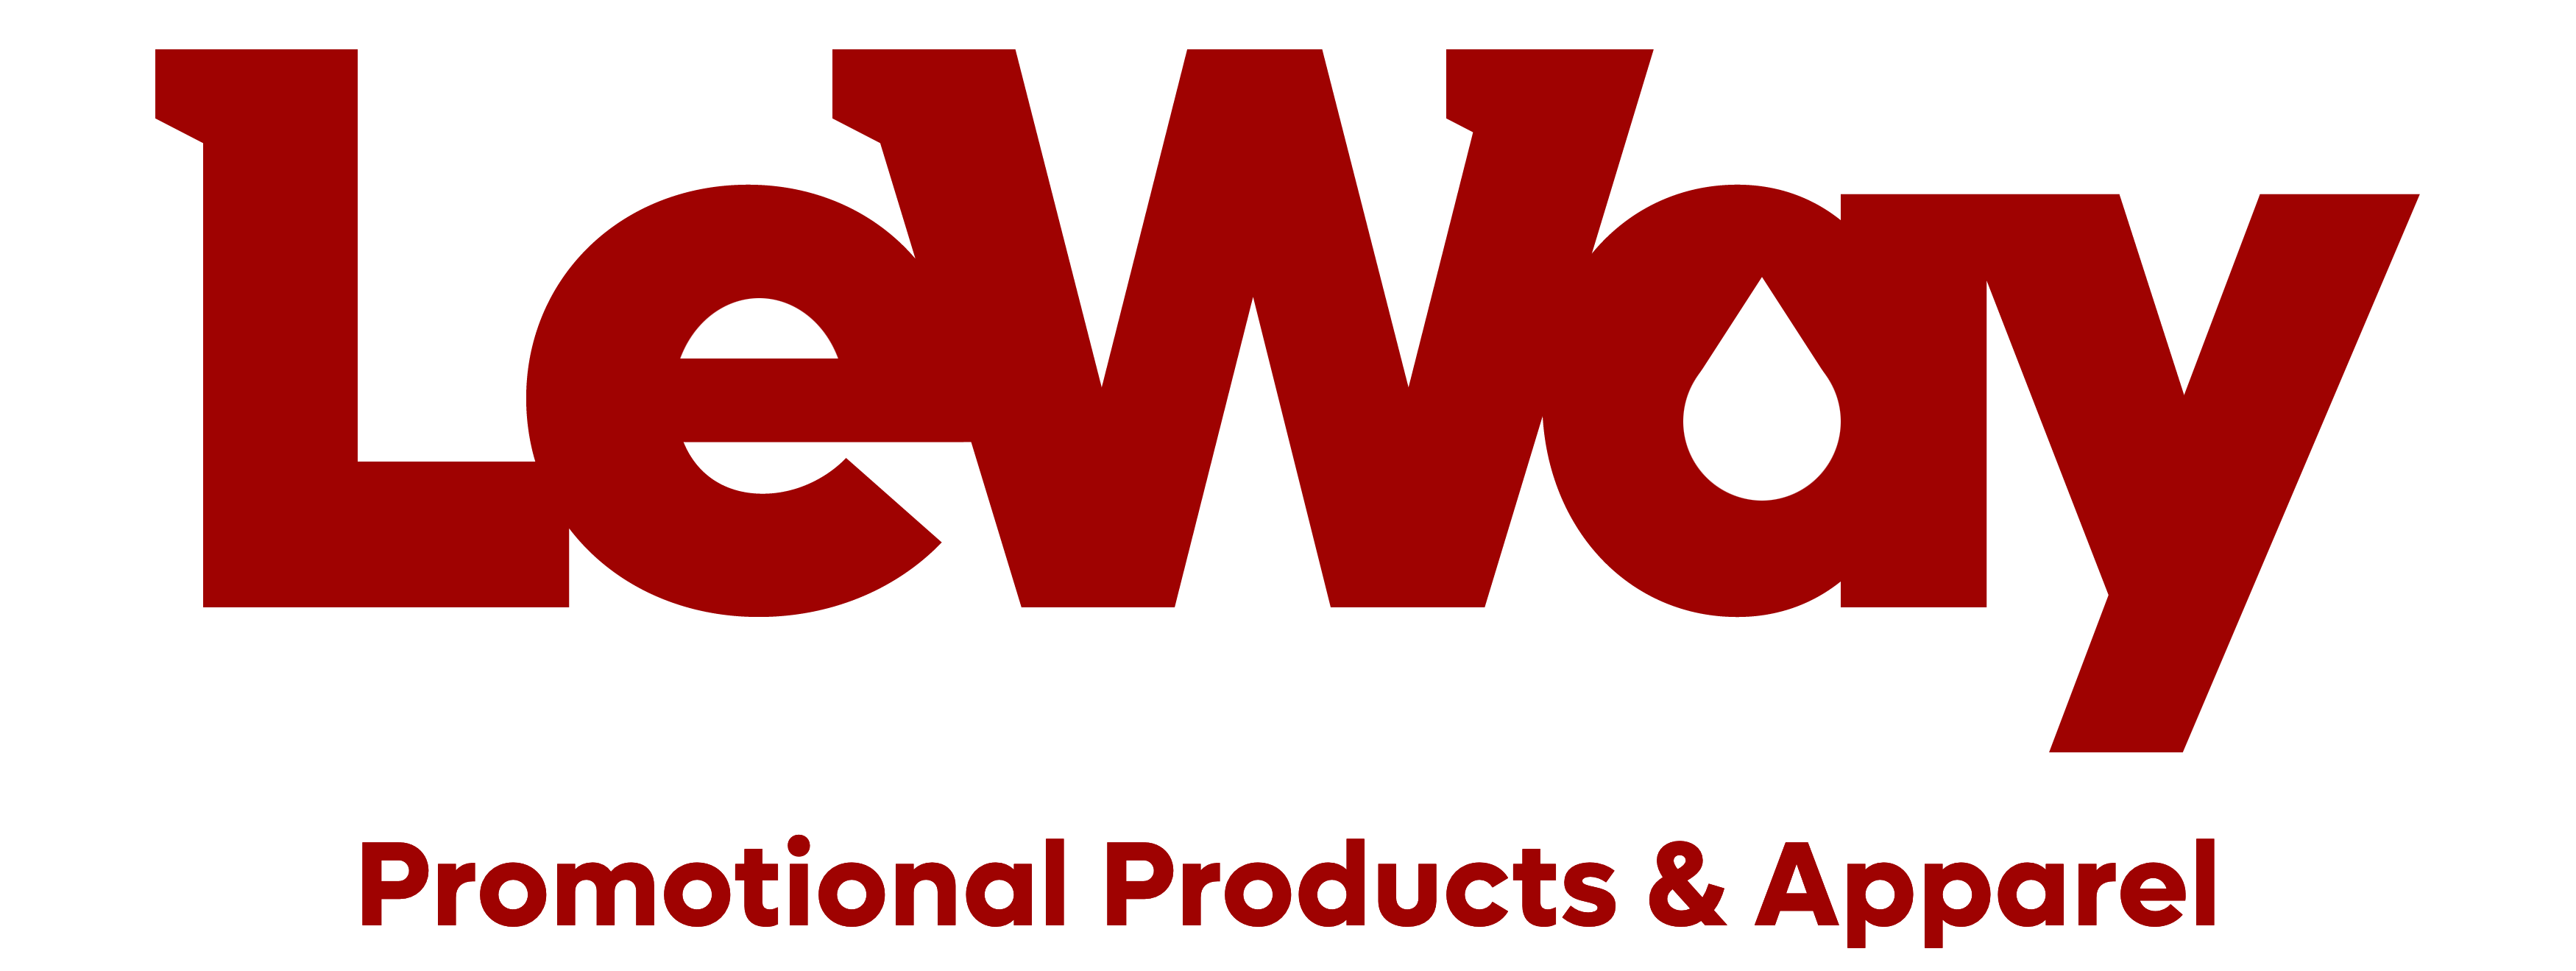 Home - LeWay Enterprises Promotional Products